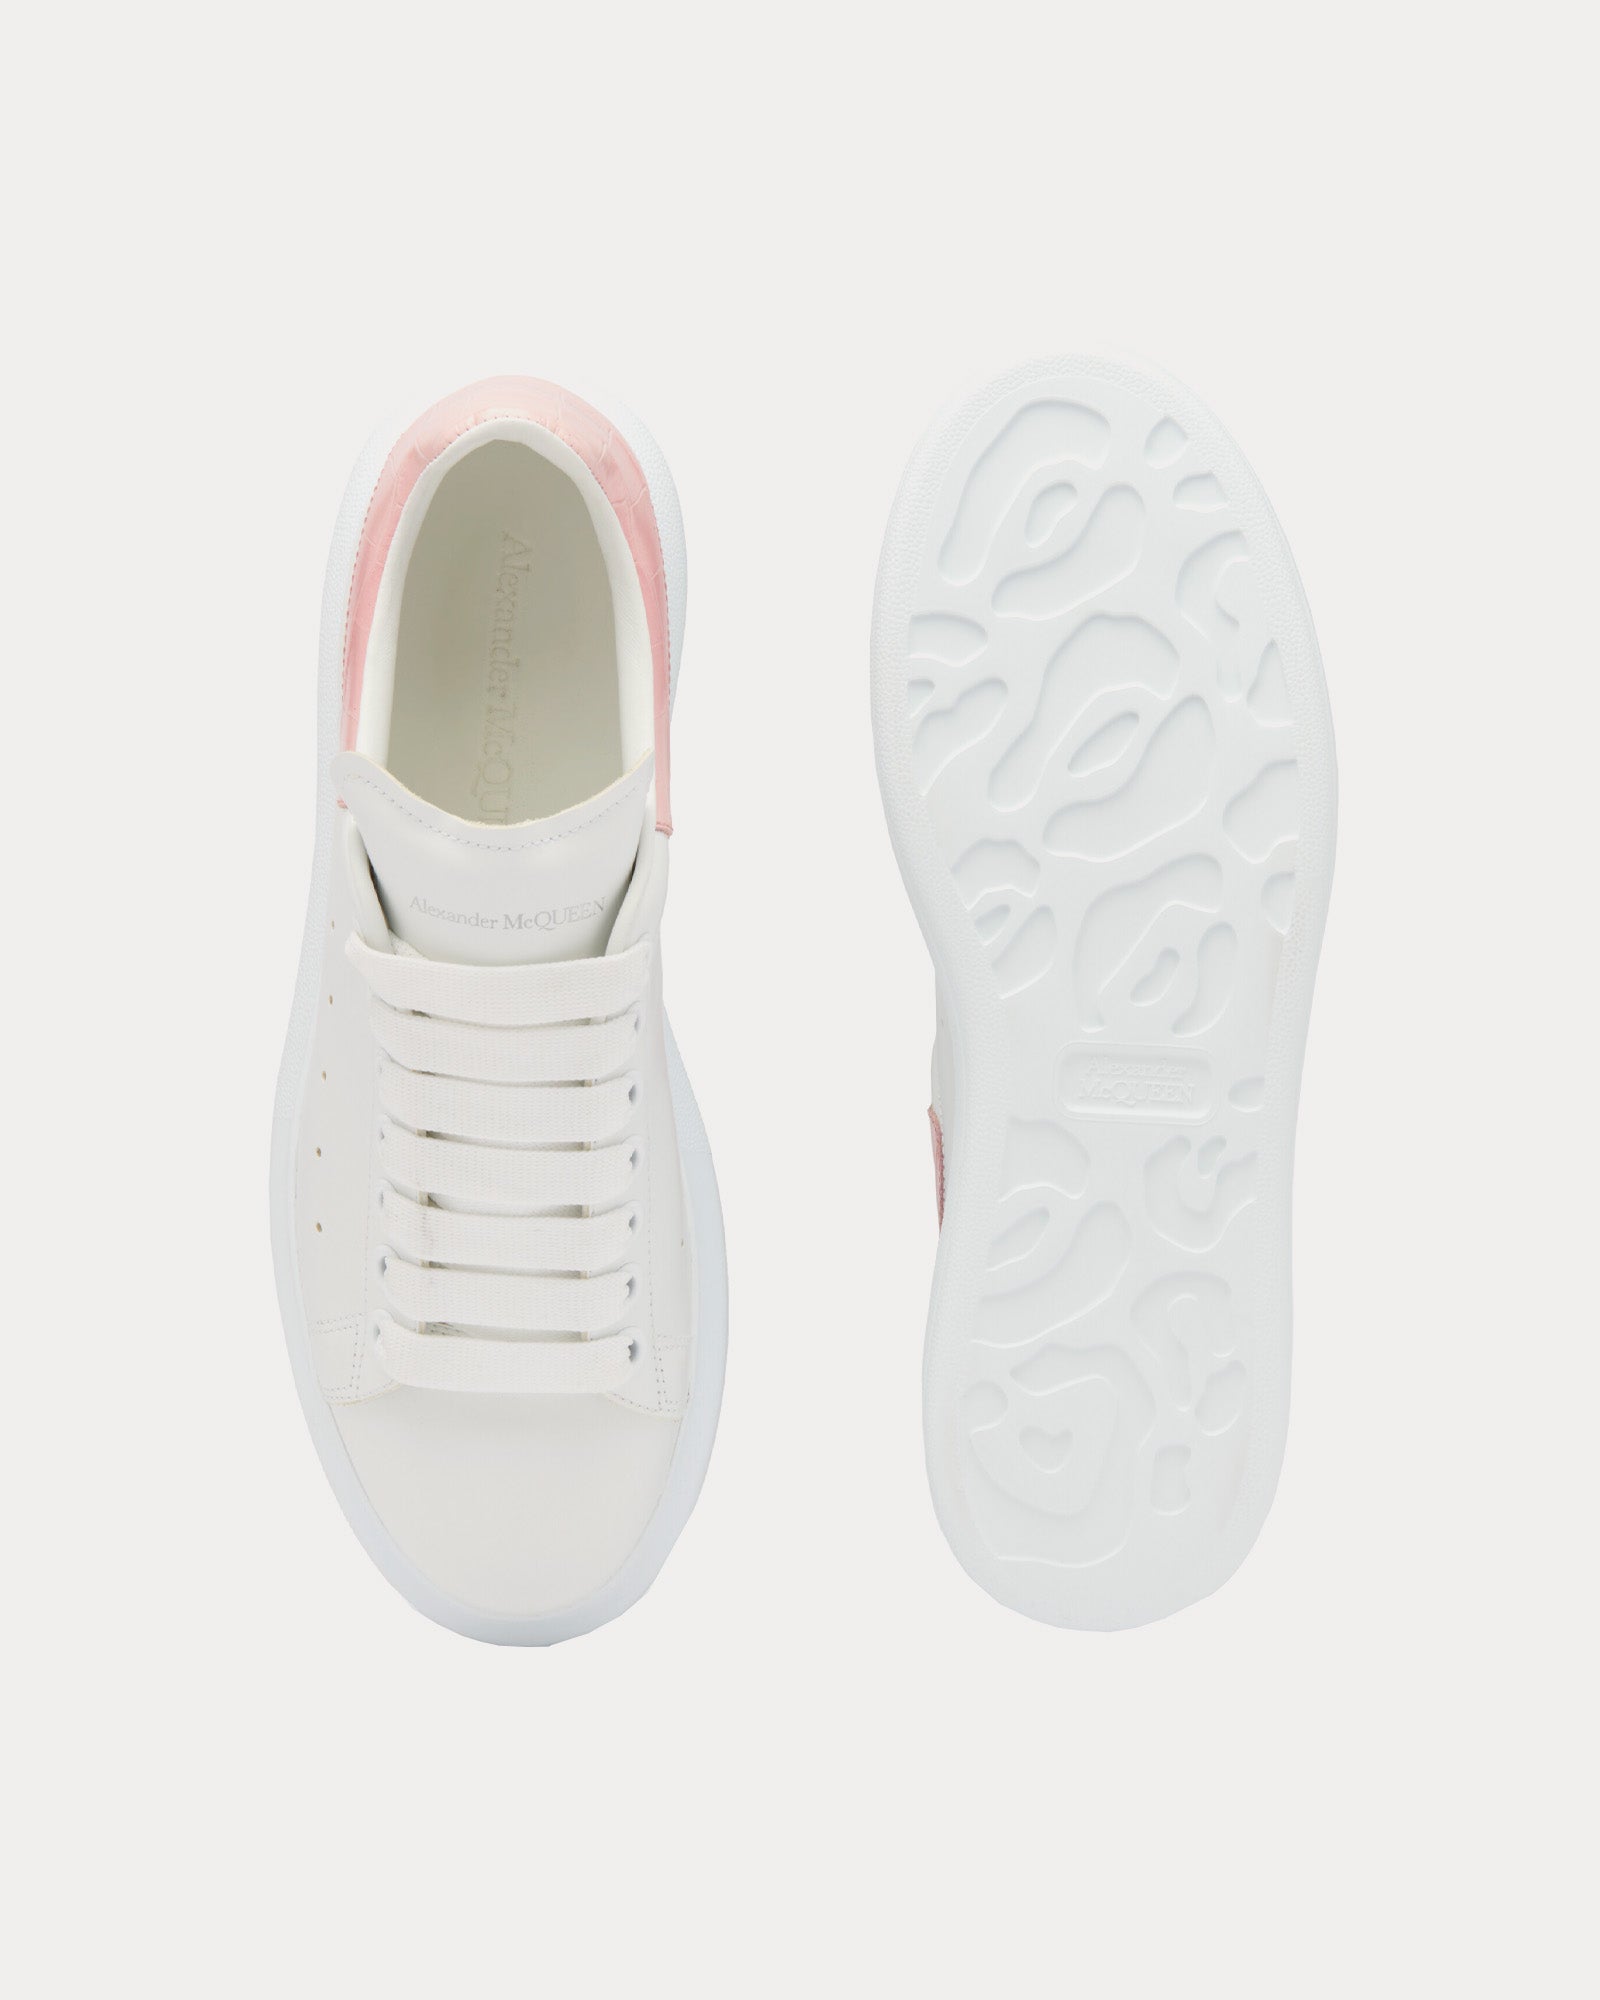 Alexander McQueen - Oversized with Croc Heel White / Clay Low Top Sneakers